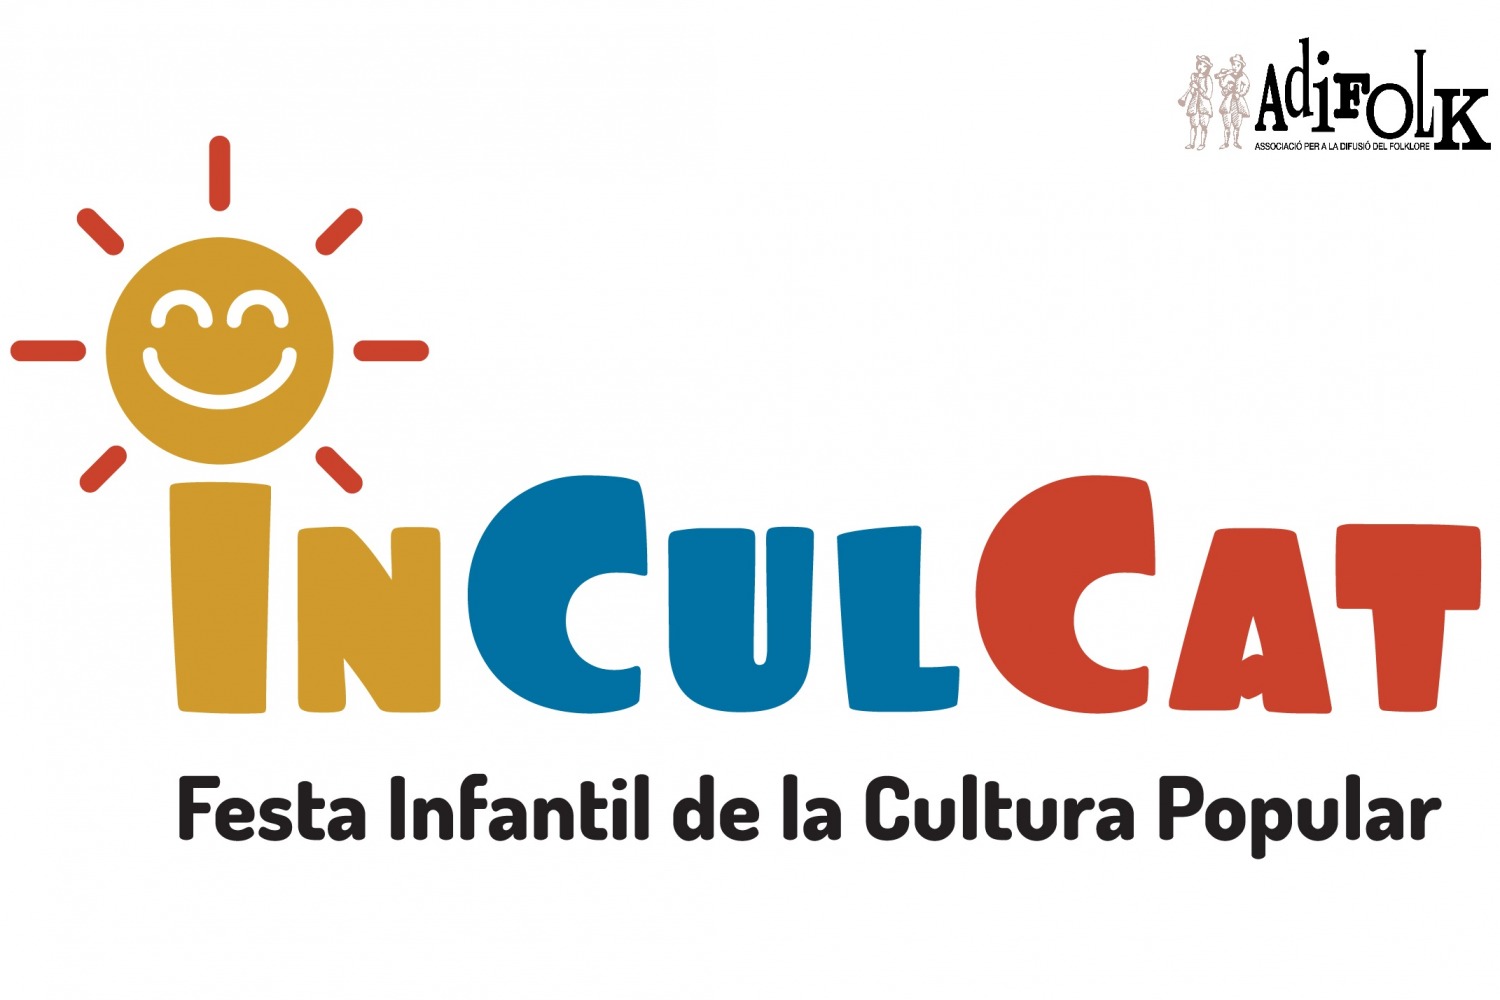 PARTICIPA A LA 1a FESTA INFANTIL DE LA CULTURA POPULAR, InCulCAT 2022!